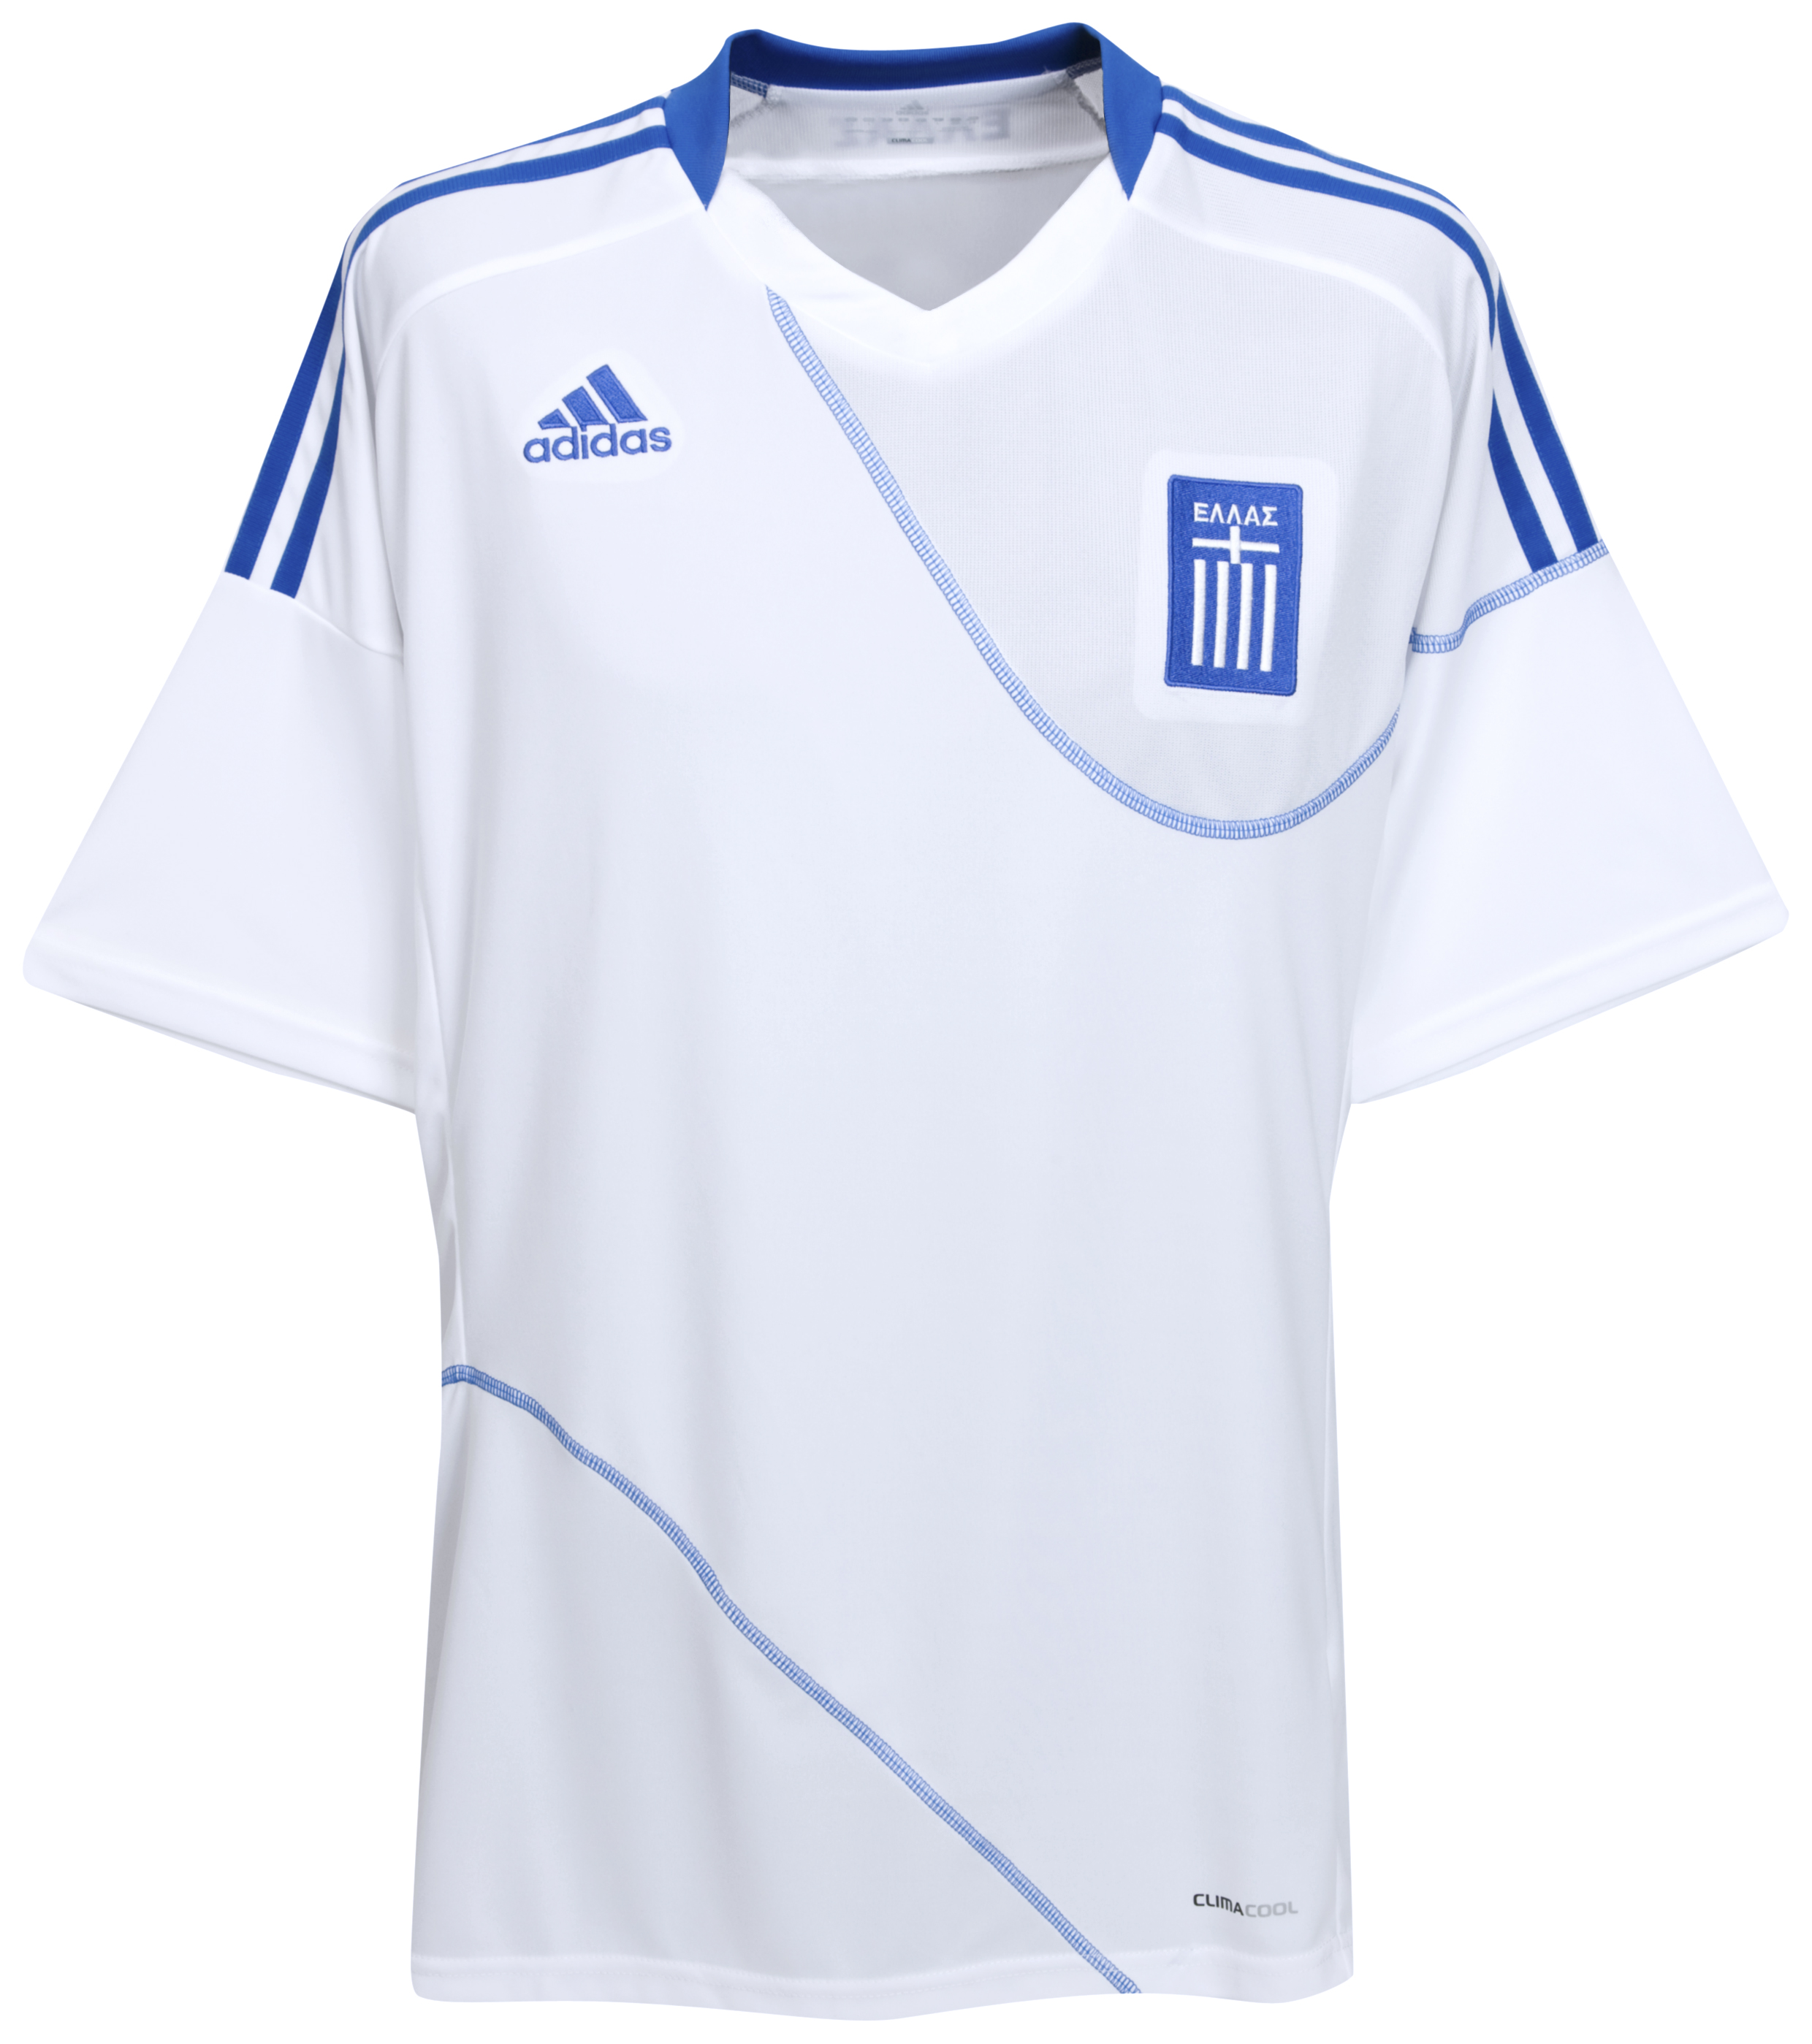 .¸-(_ (قمصان جميع المنتخبات لكأس العالم 2010) _)-,. Kb-63743